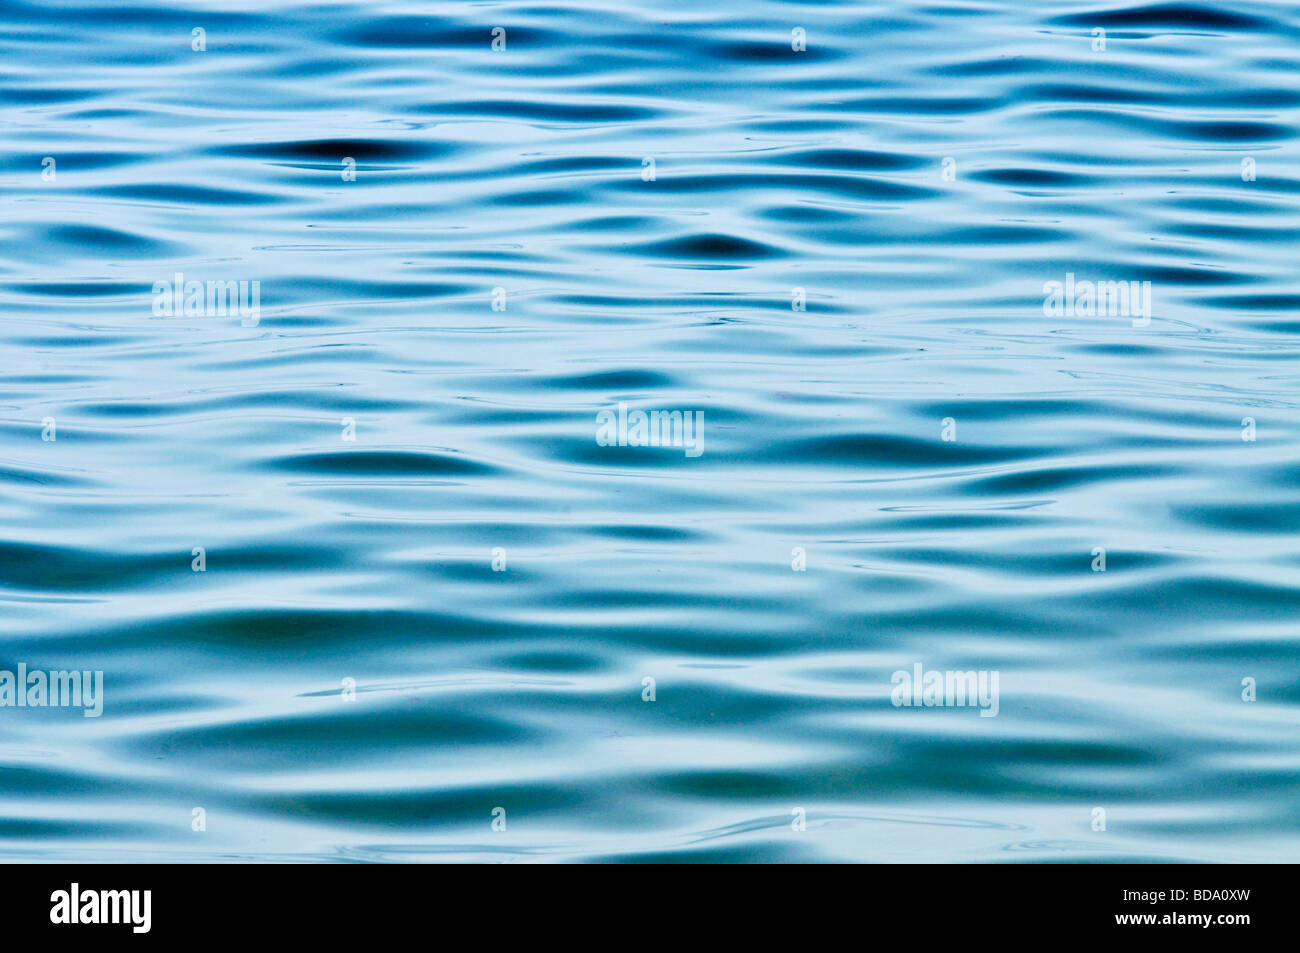 Résumé de l'eau de l'océan avec des ondulations de surface Banque D'Images